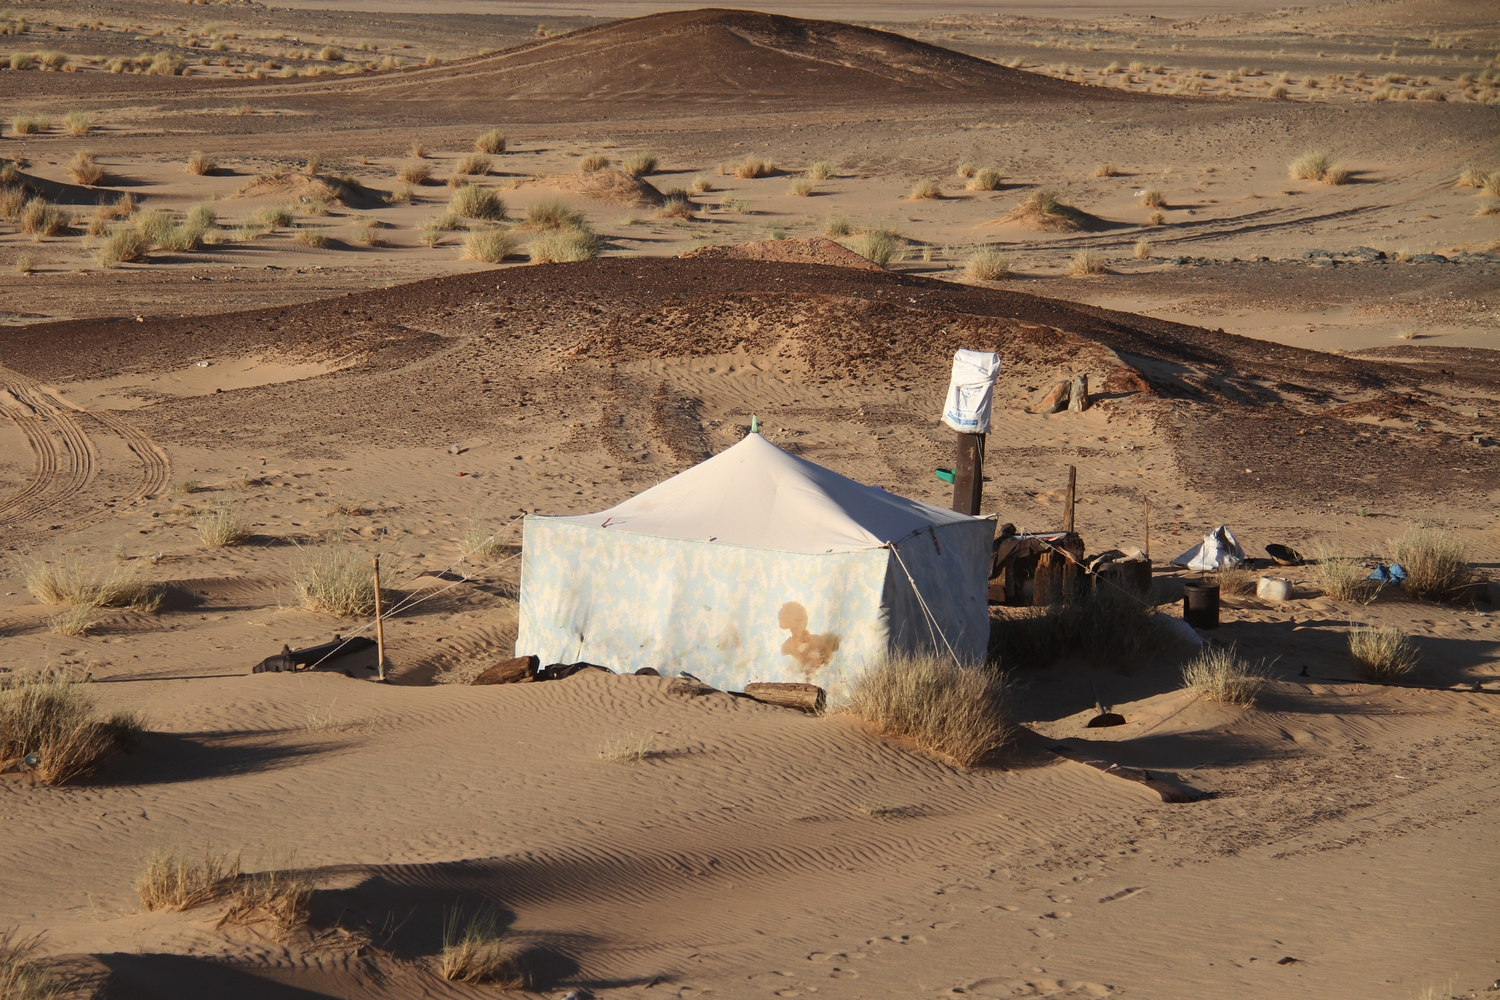 Mauritania Sahara Desert Nomads Camp